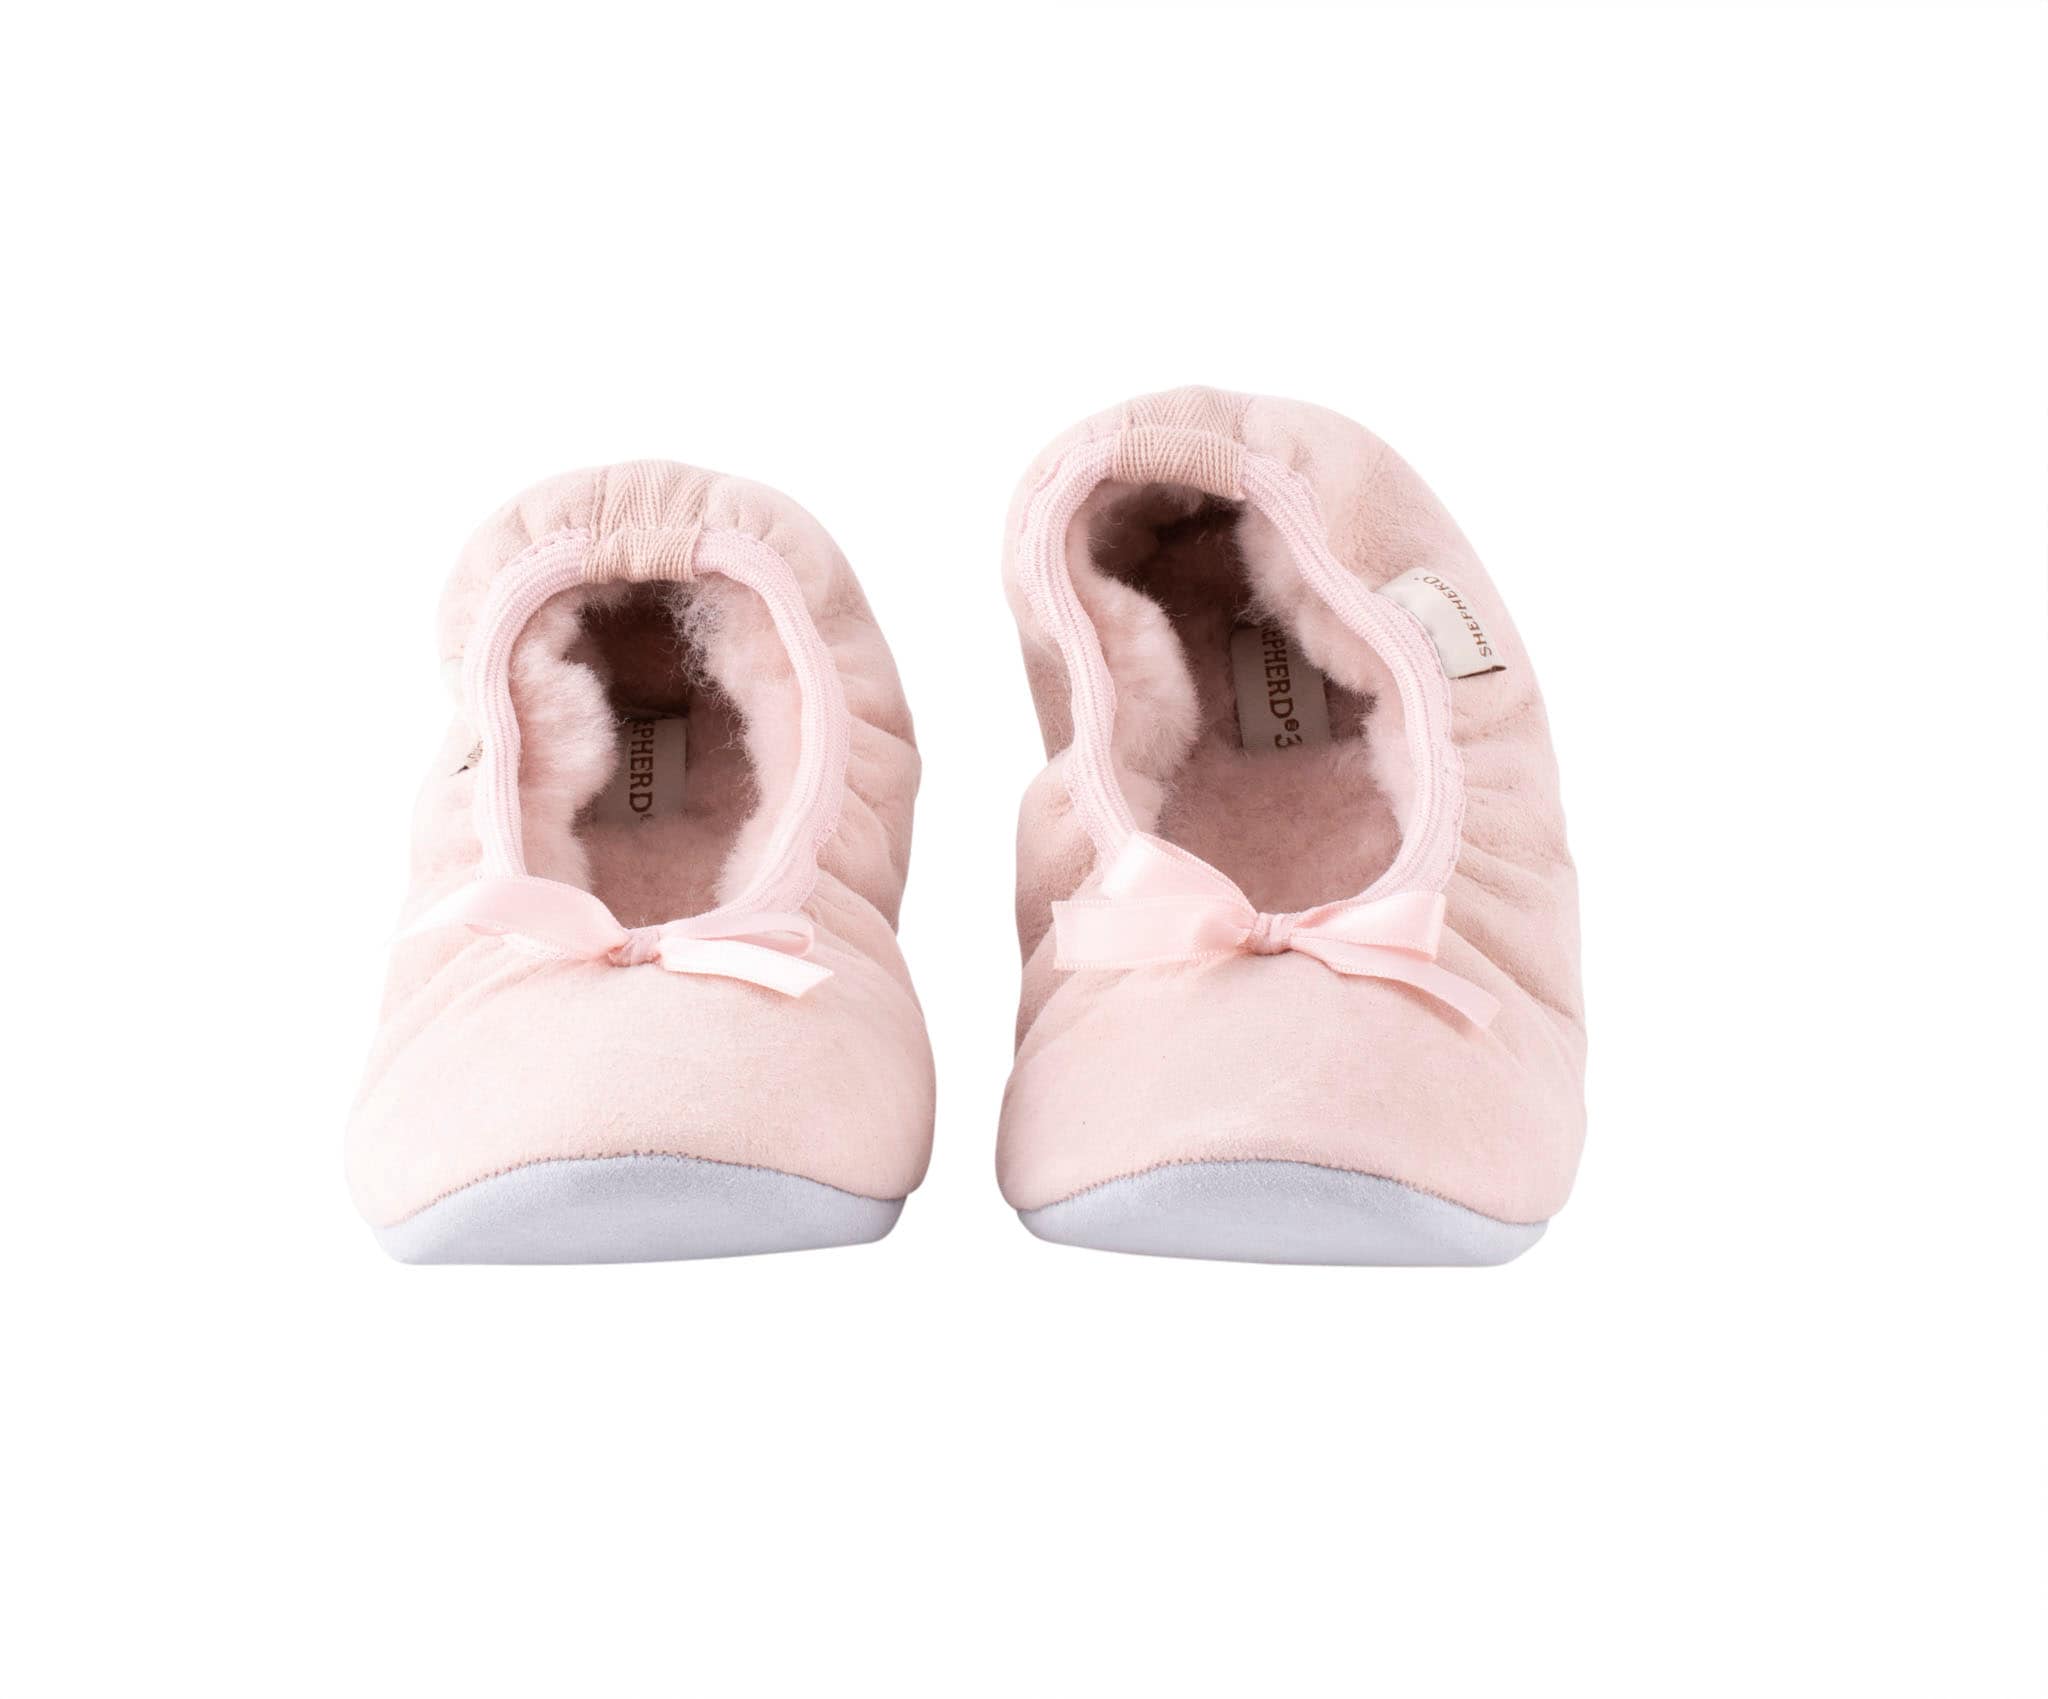 sheepskin slippers for women.